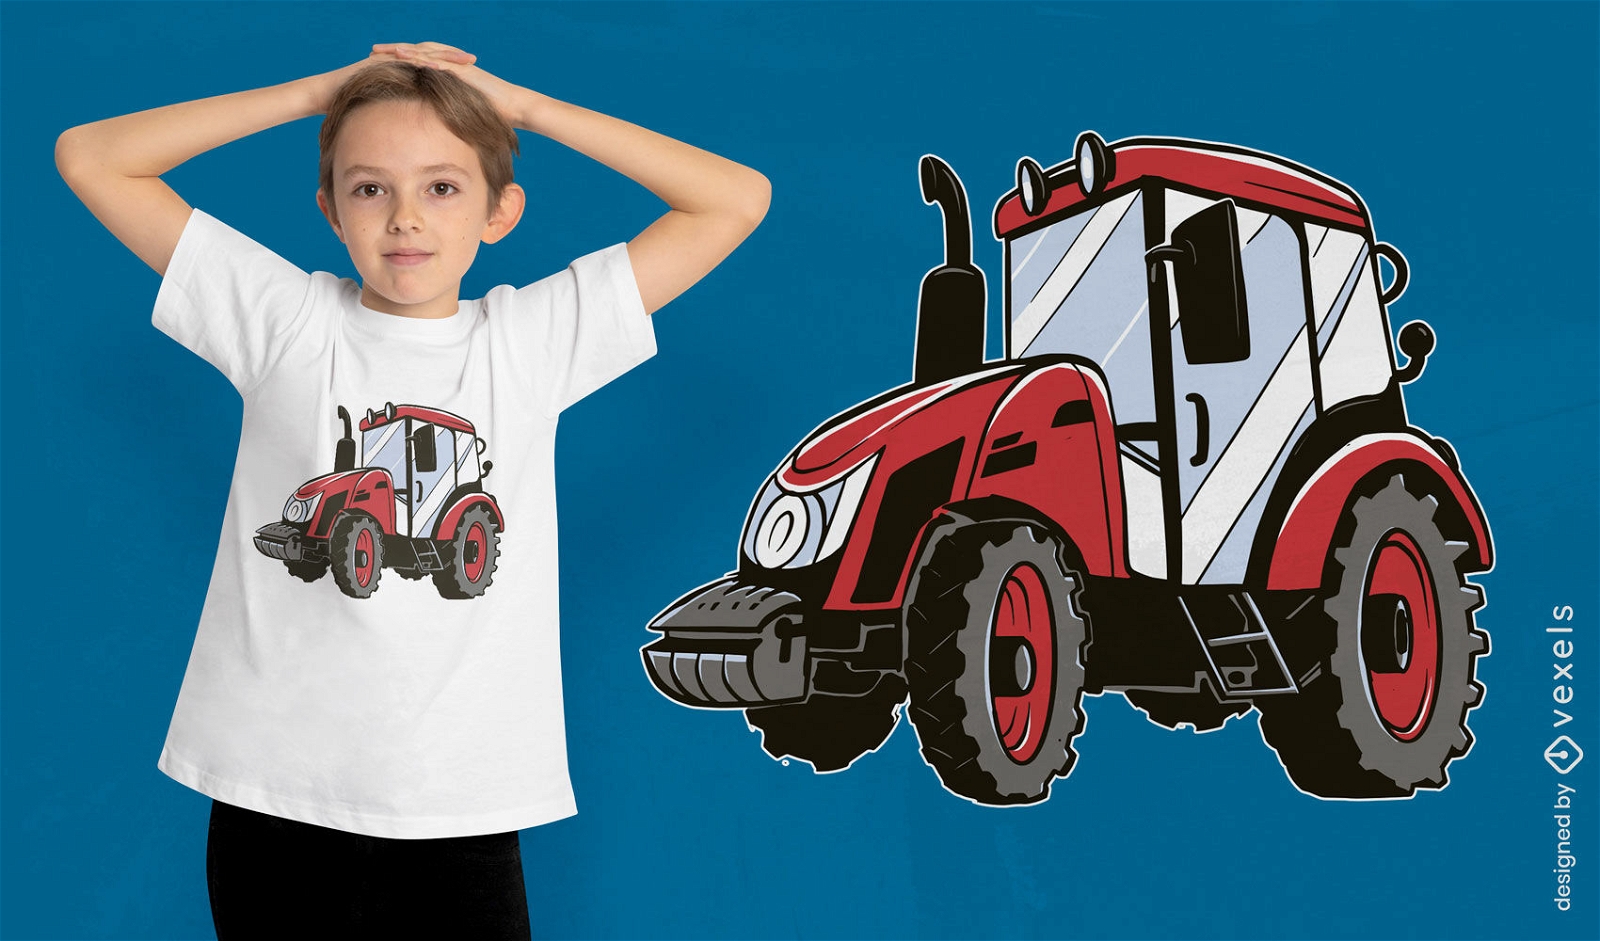 Diseño de camiseta de tractor agrícola rojo.